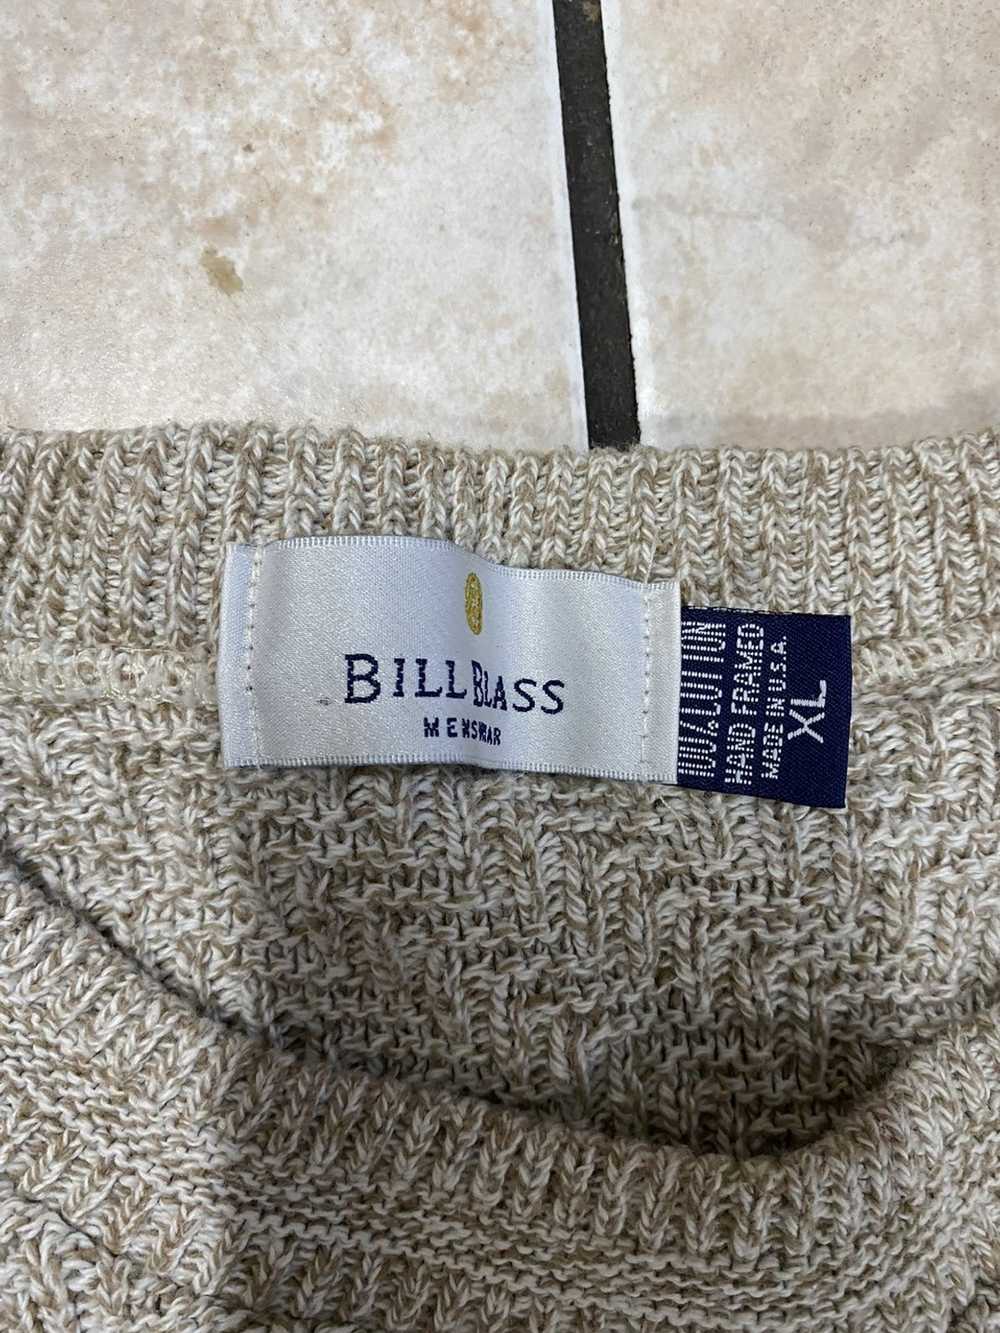 Bill Blass Bill blass vintage knit sweater - image 3